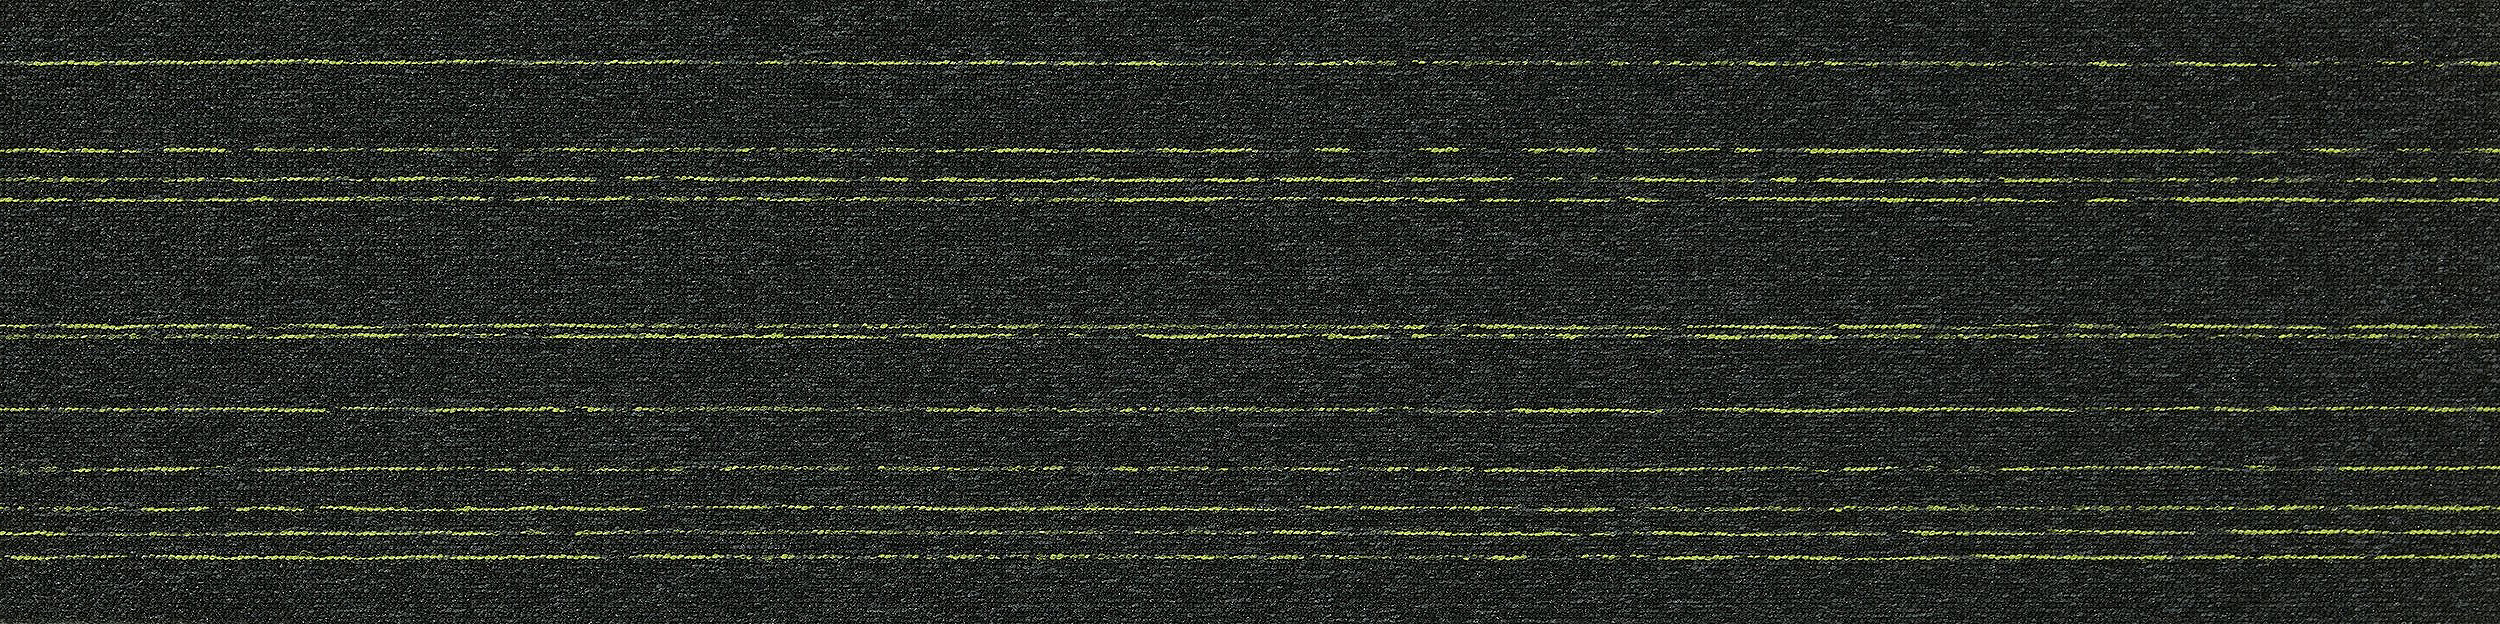 Flash Line Carpet Tile In Olive Flash Bildnummer 8